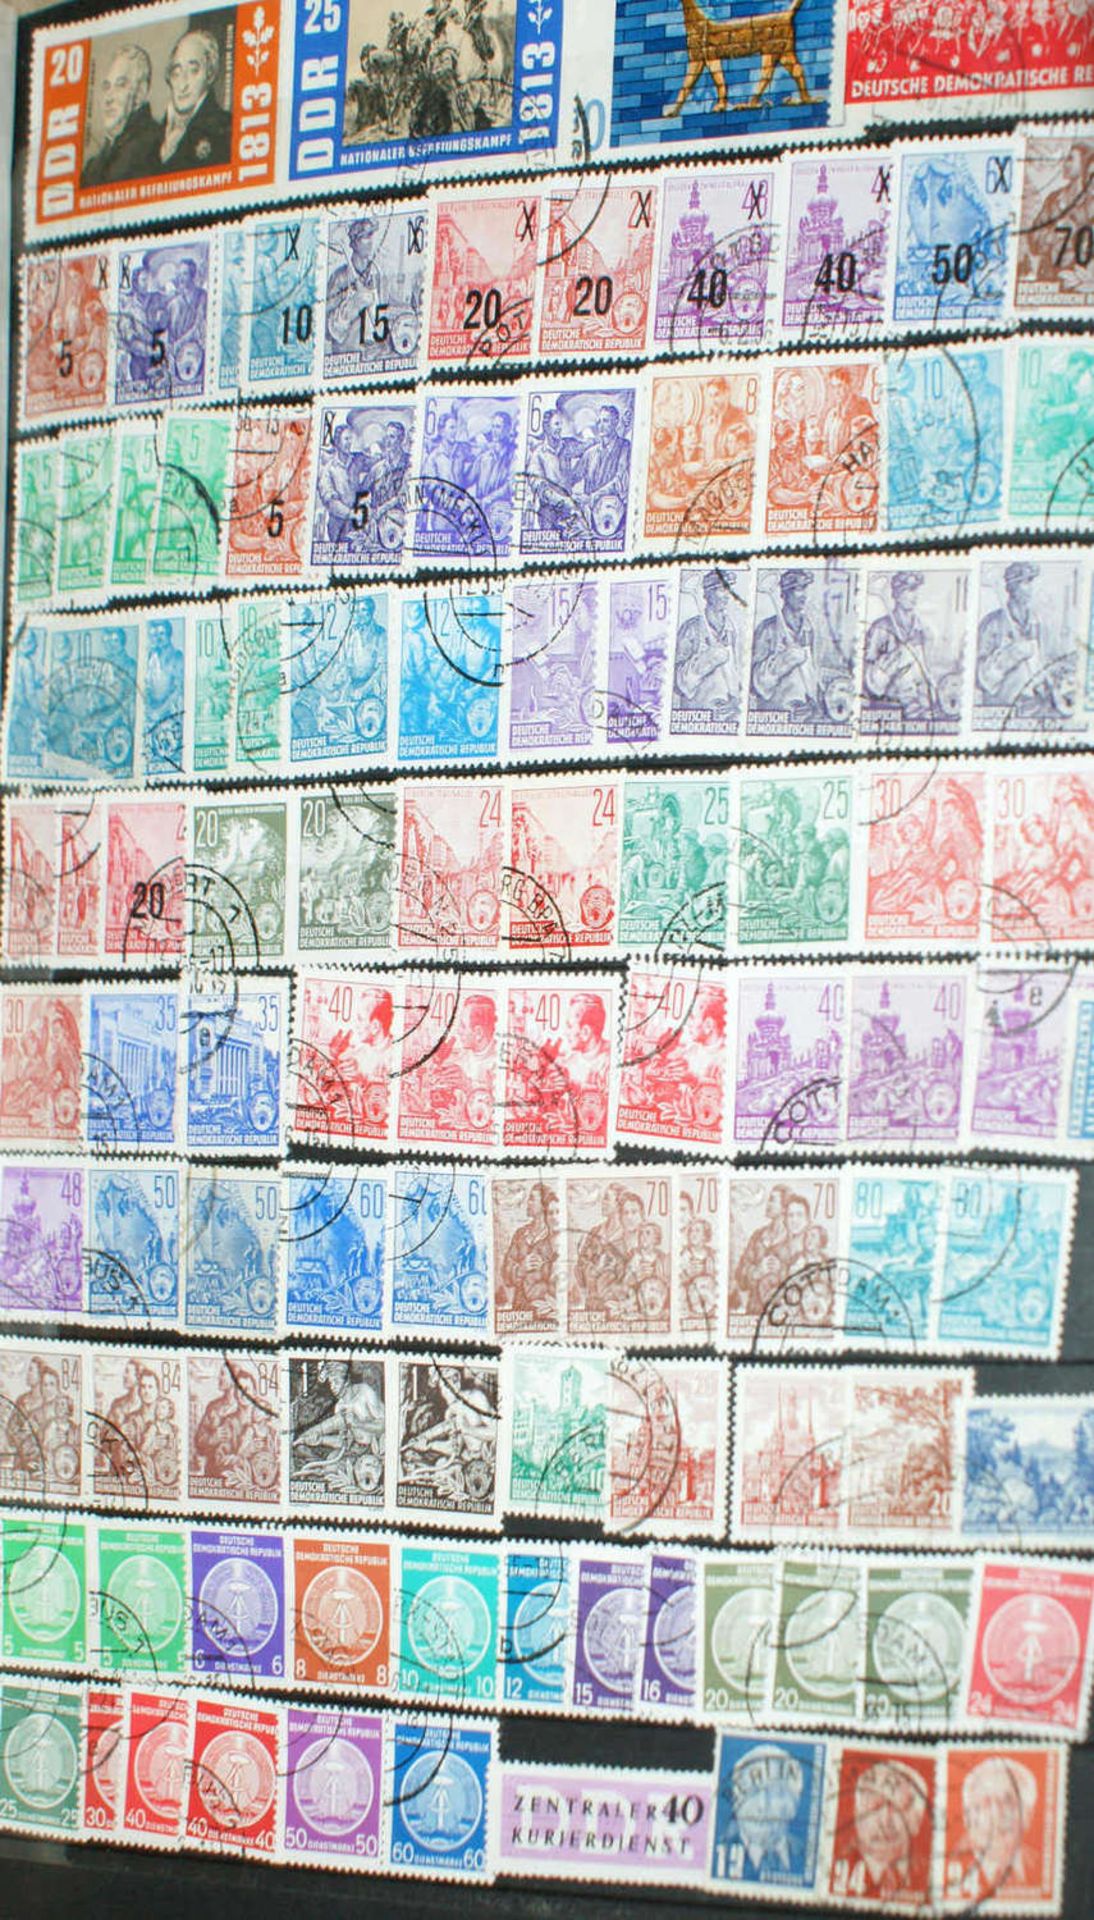 DDR - Briefmarken Dubletten Konvolut, bestehend aus 16 Alben, teilweise schlecht gelagert. - Image 2 of 4